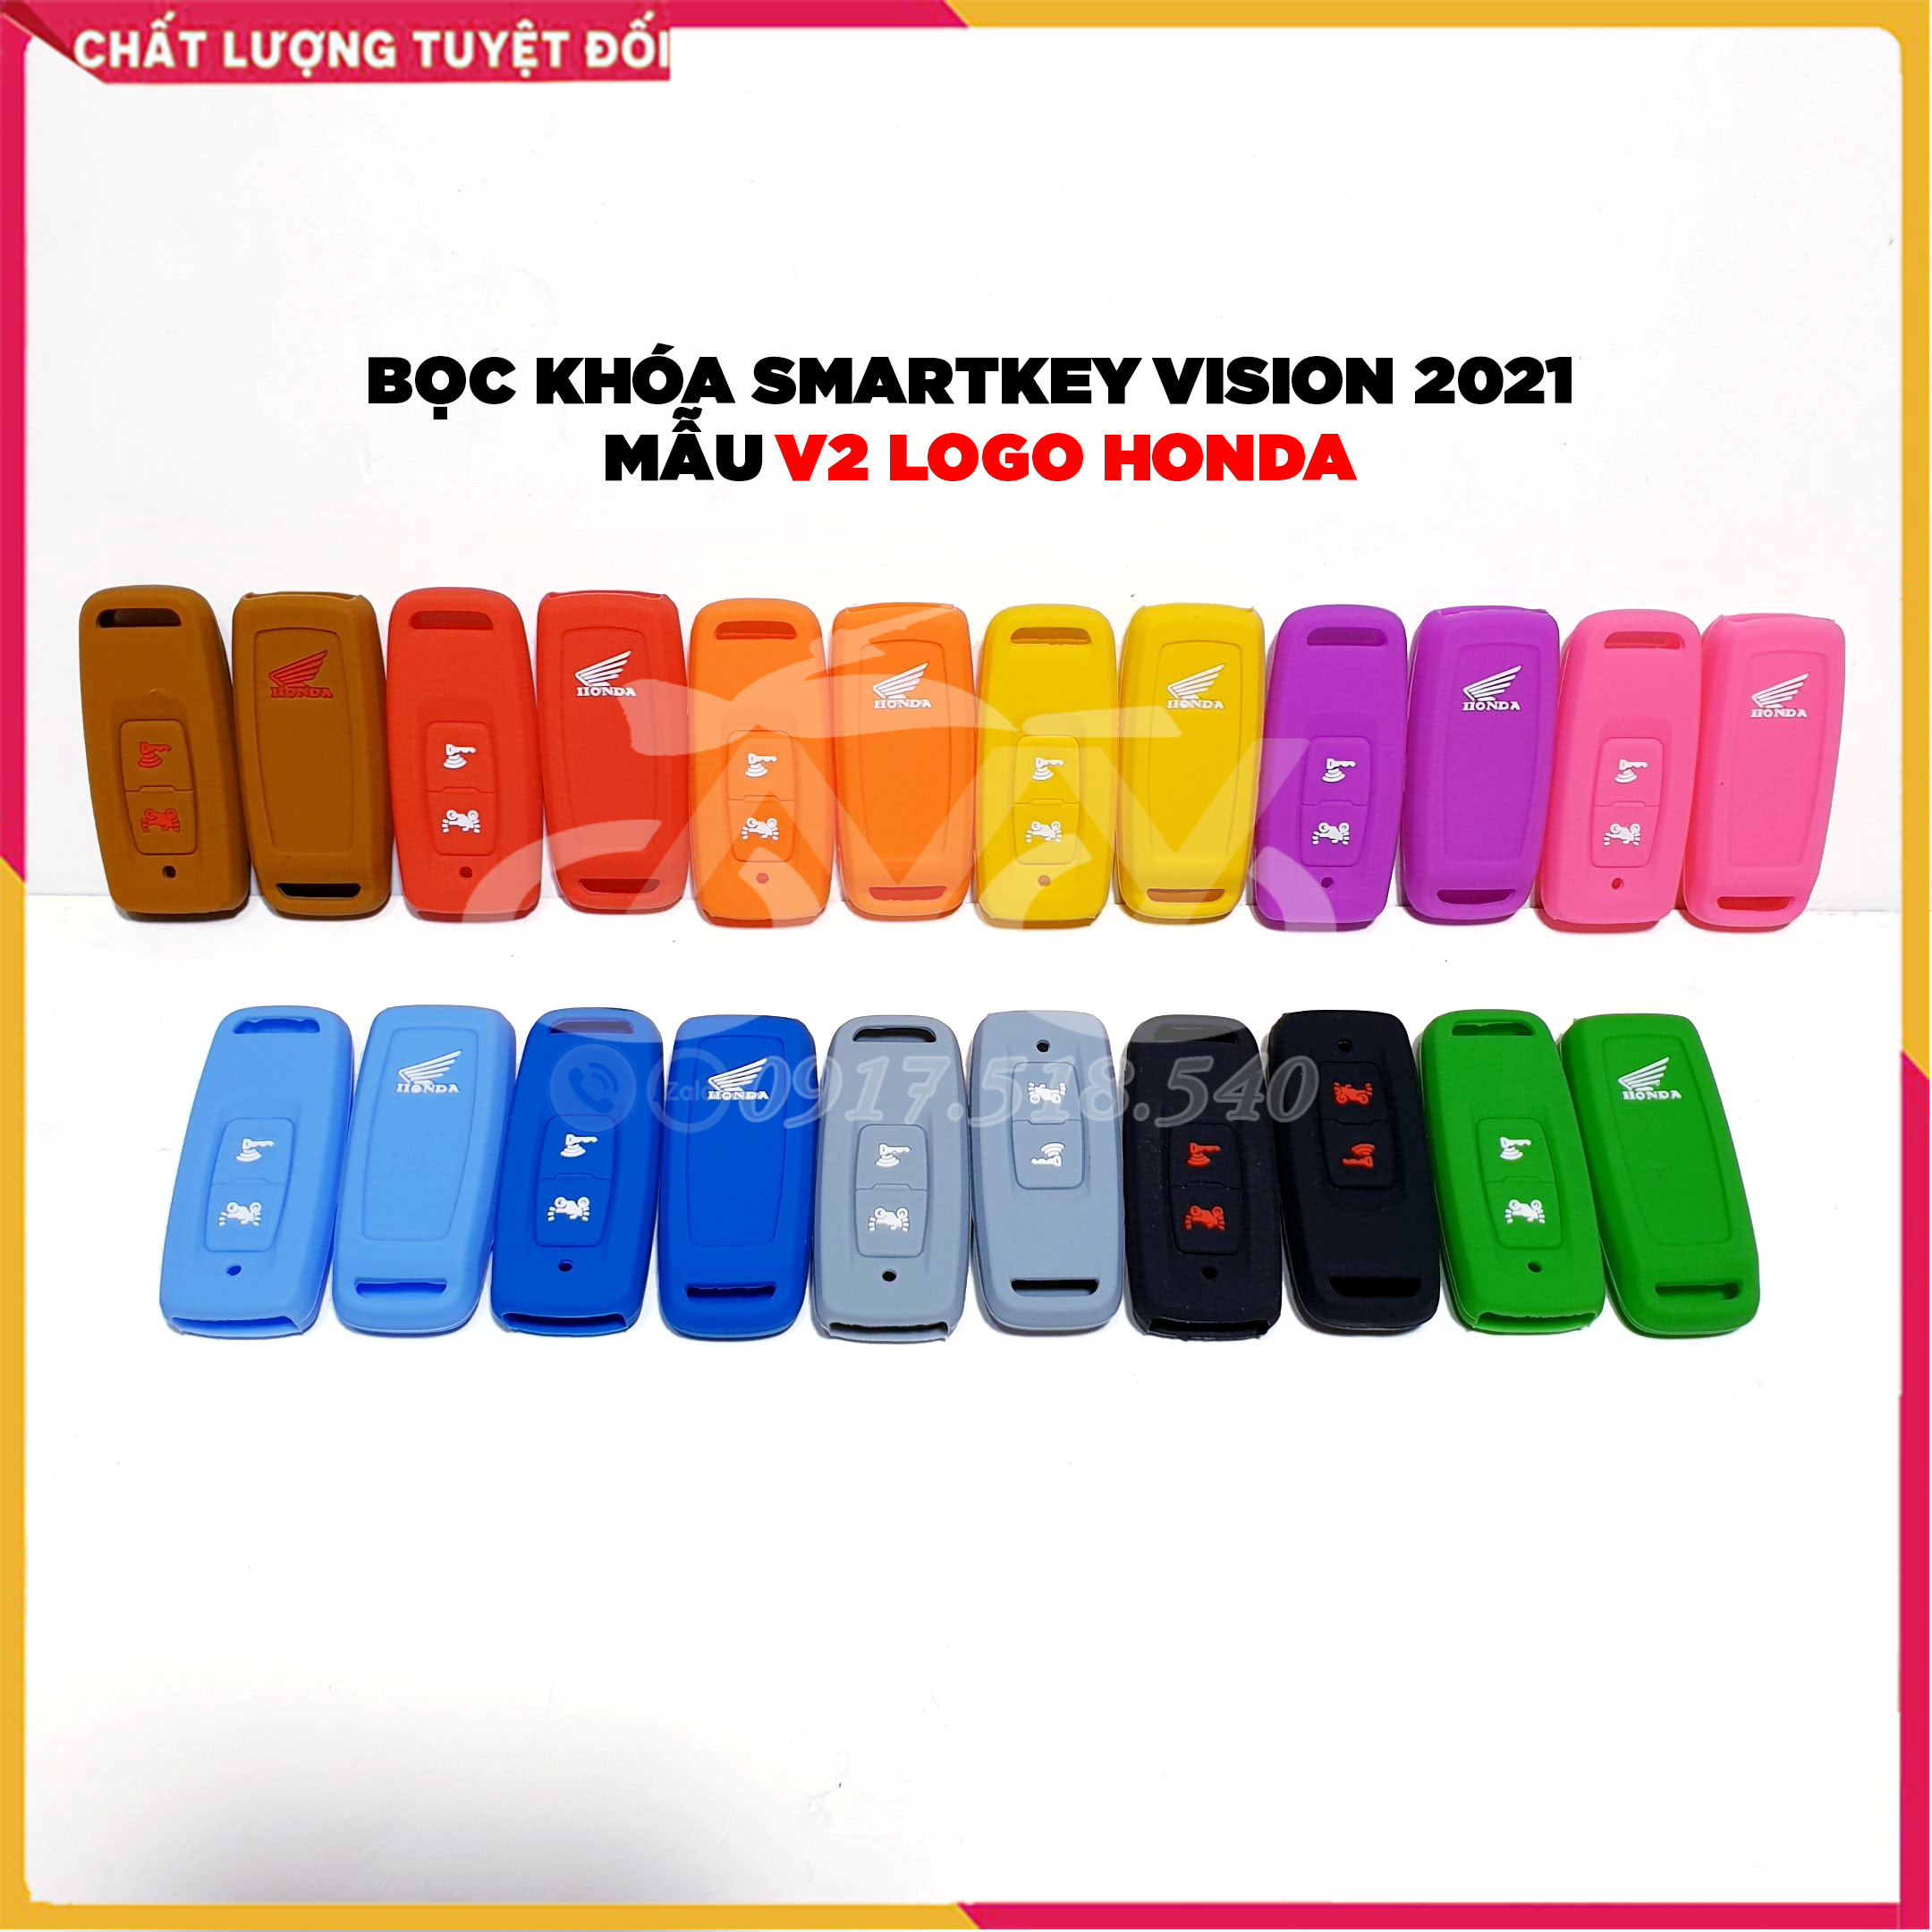 Bọc chìa khoá smartkey vision 2021 - 𝗯𝗼̣𝗰 𝗰𝗵𝗶̀𝗮 𝗹𝗼𝗴𝗼 𝗛𝗢𝗡𝗗𝗔